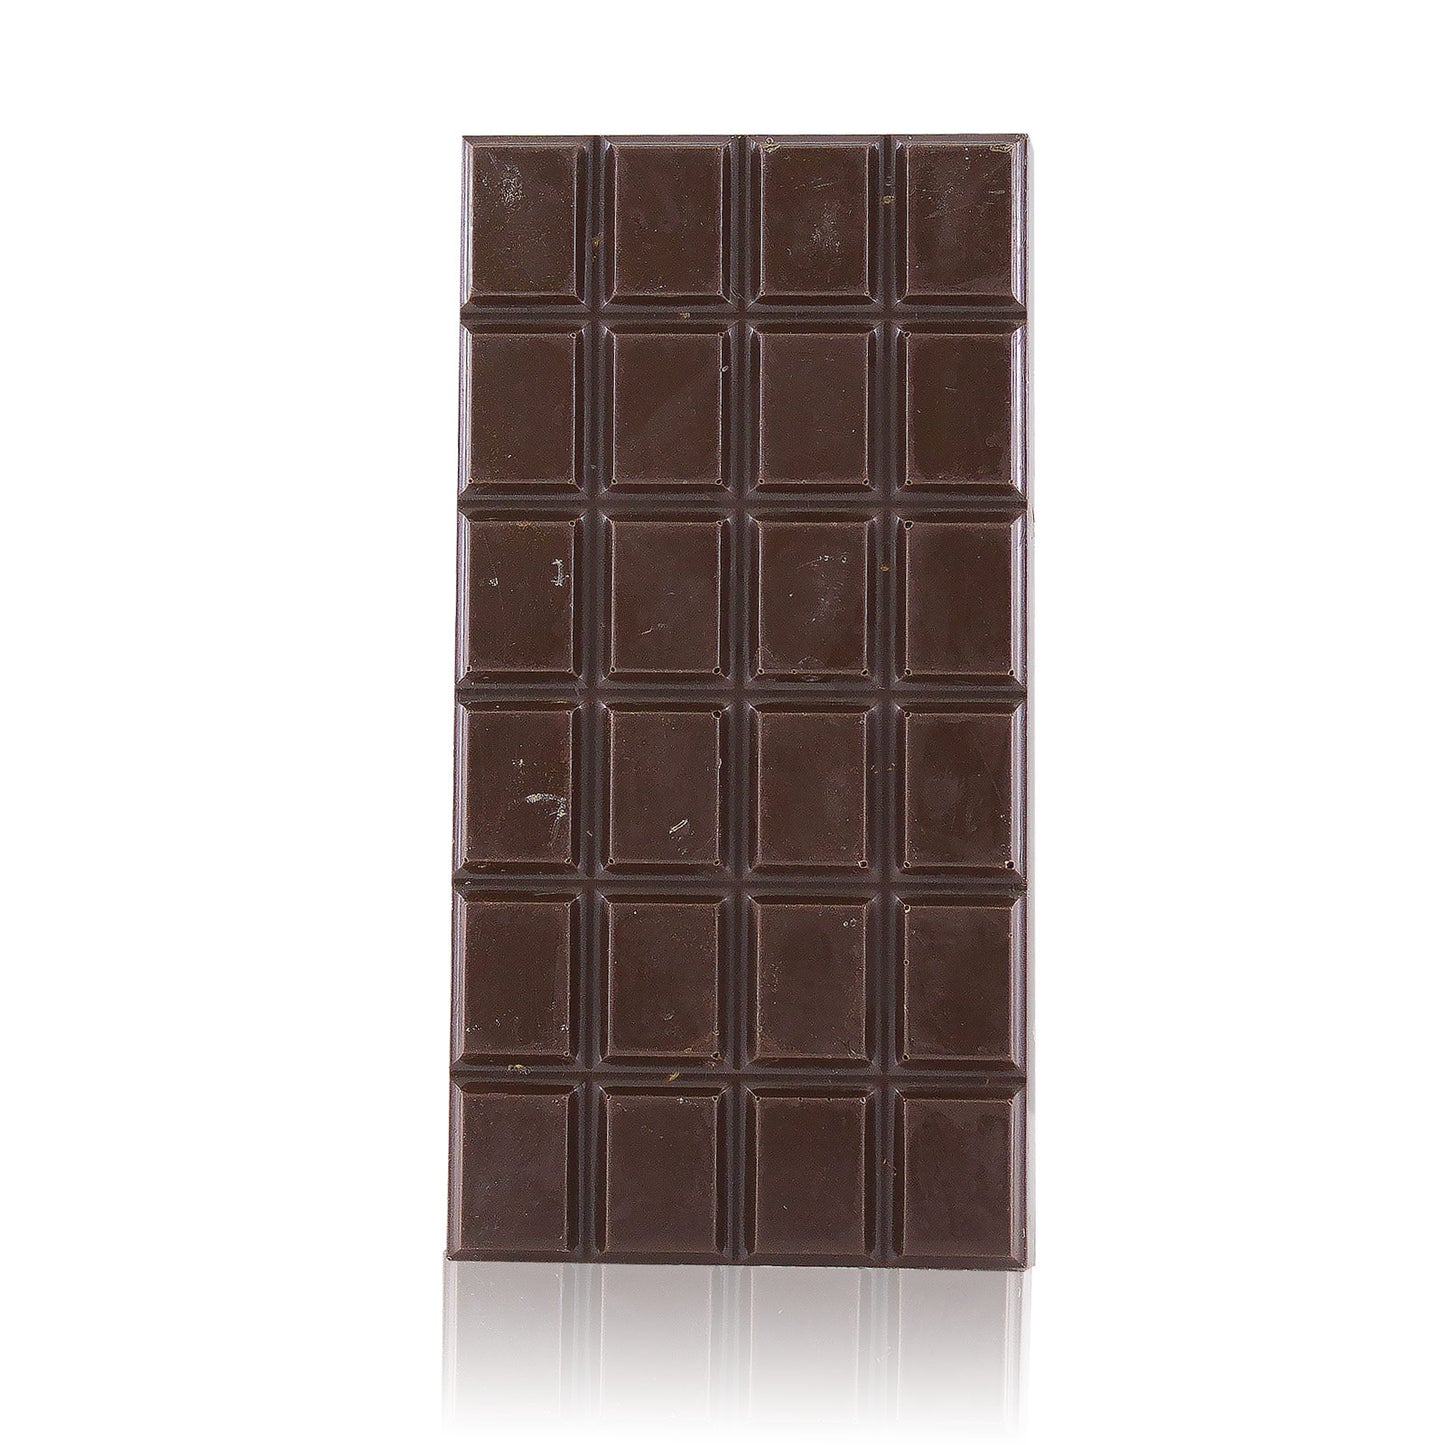 Tavoletta di cioccolato extra fondente al Bergamotto - 70%